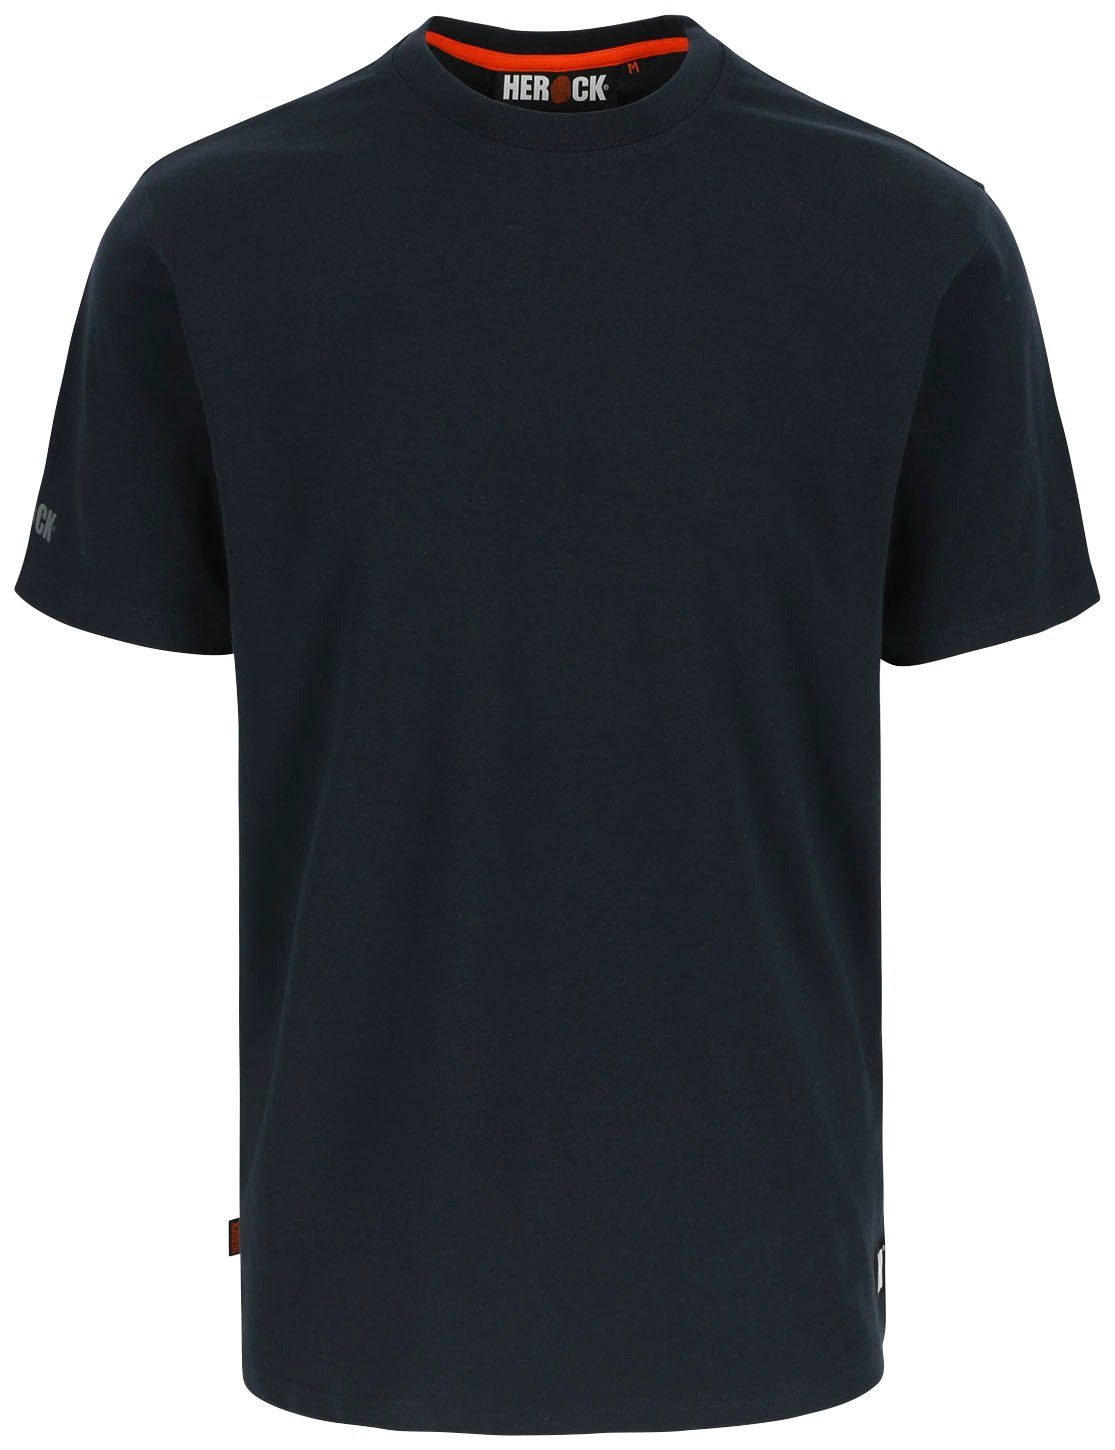 Herock T-Shirt Callius T-Shirt kurze Herock®-Aufdruck, Rundhalsausschnitt, blau Ärmel Rippstrickkragen Ärmel, kurze